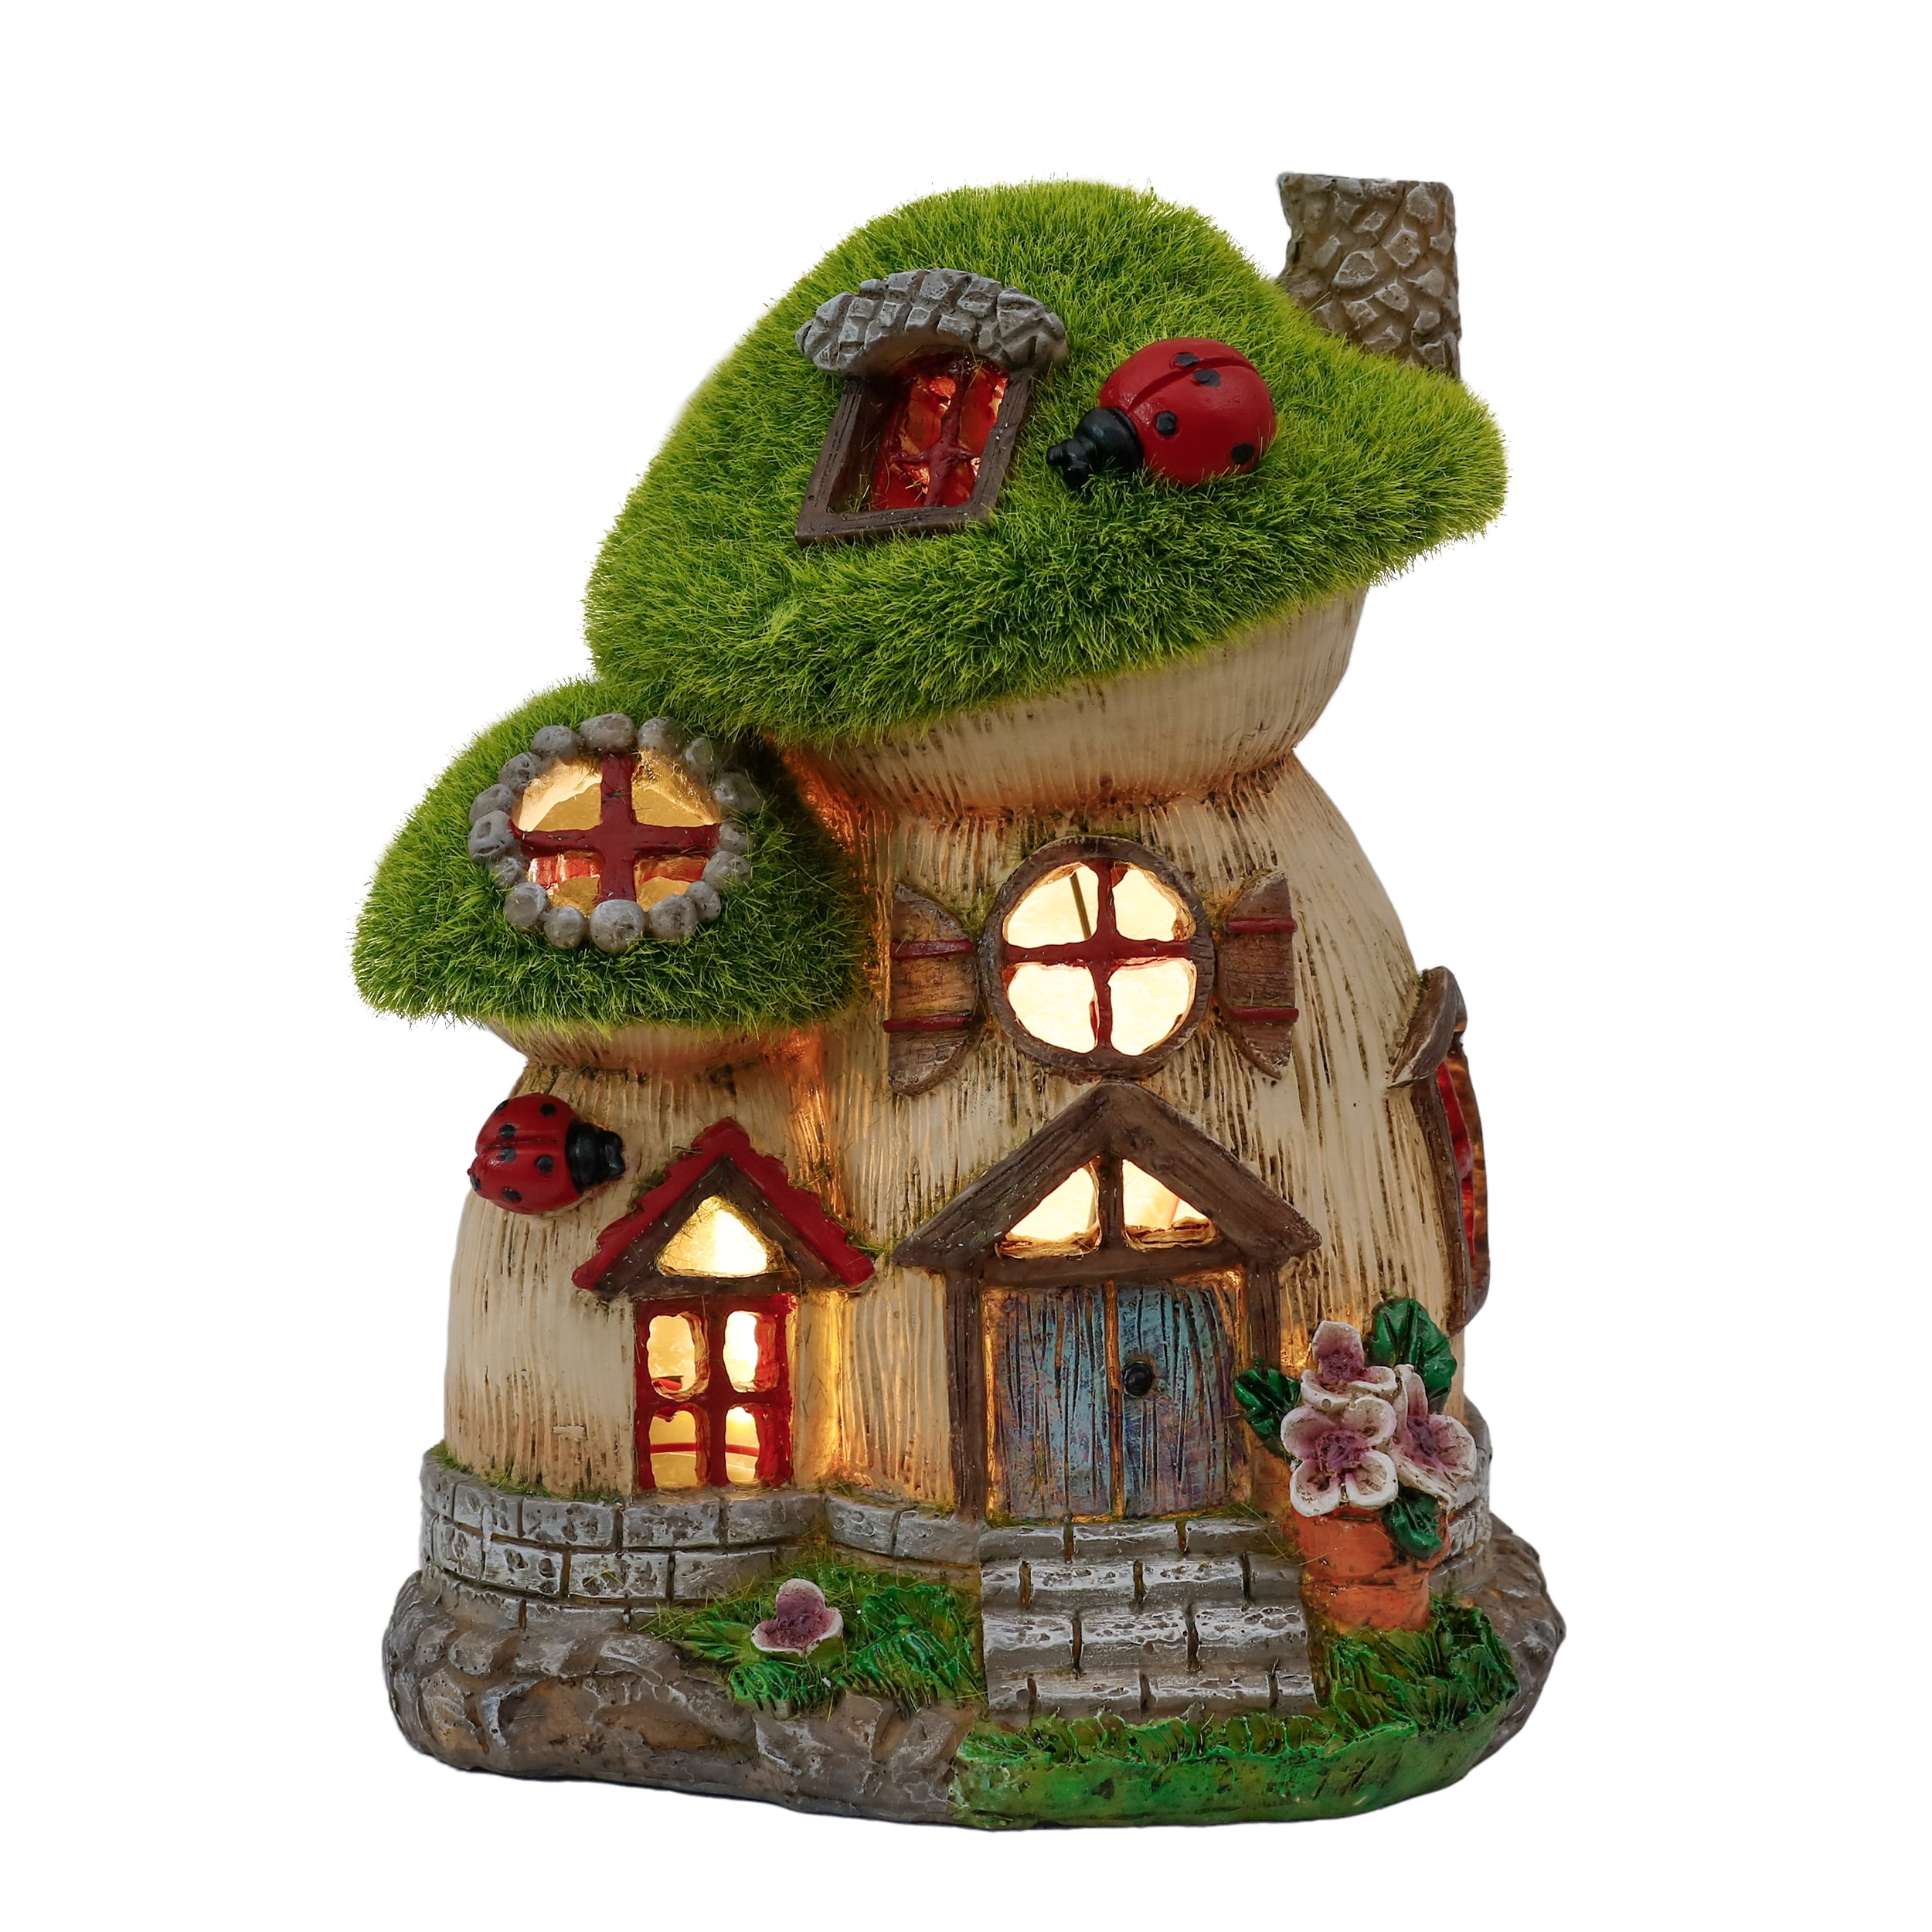 6 Unicorn Fairy Garden Kit & Miniature Tree House Figurines Mini Garden Decor 